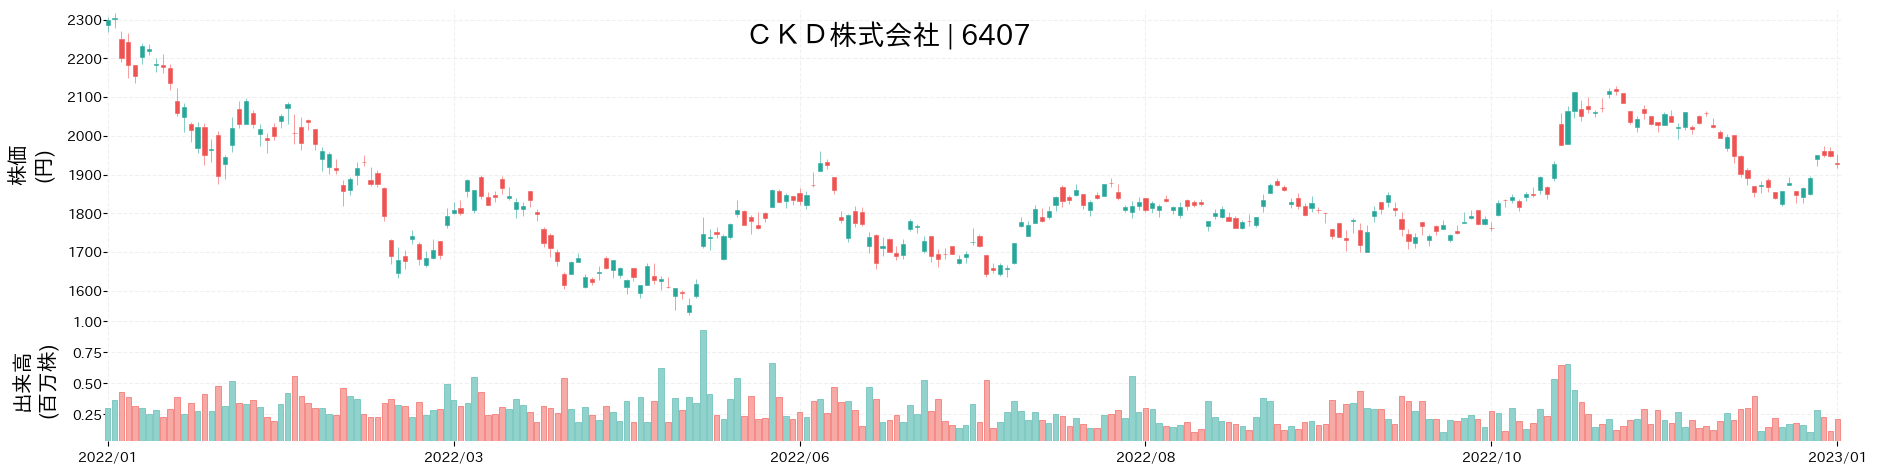 CKDの株価推移(2022)